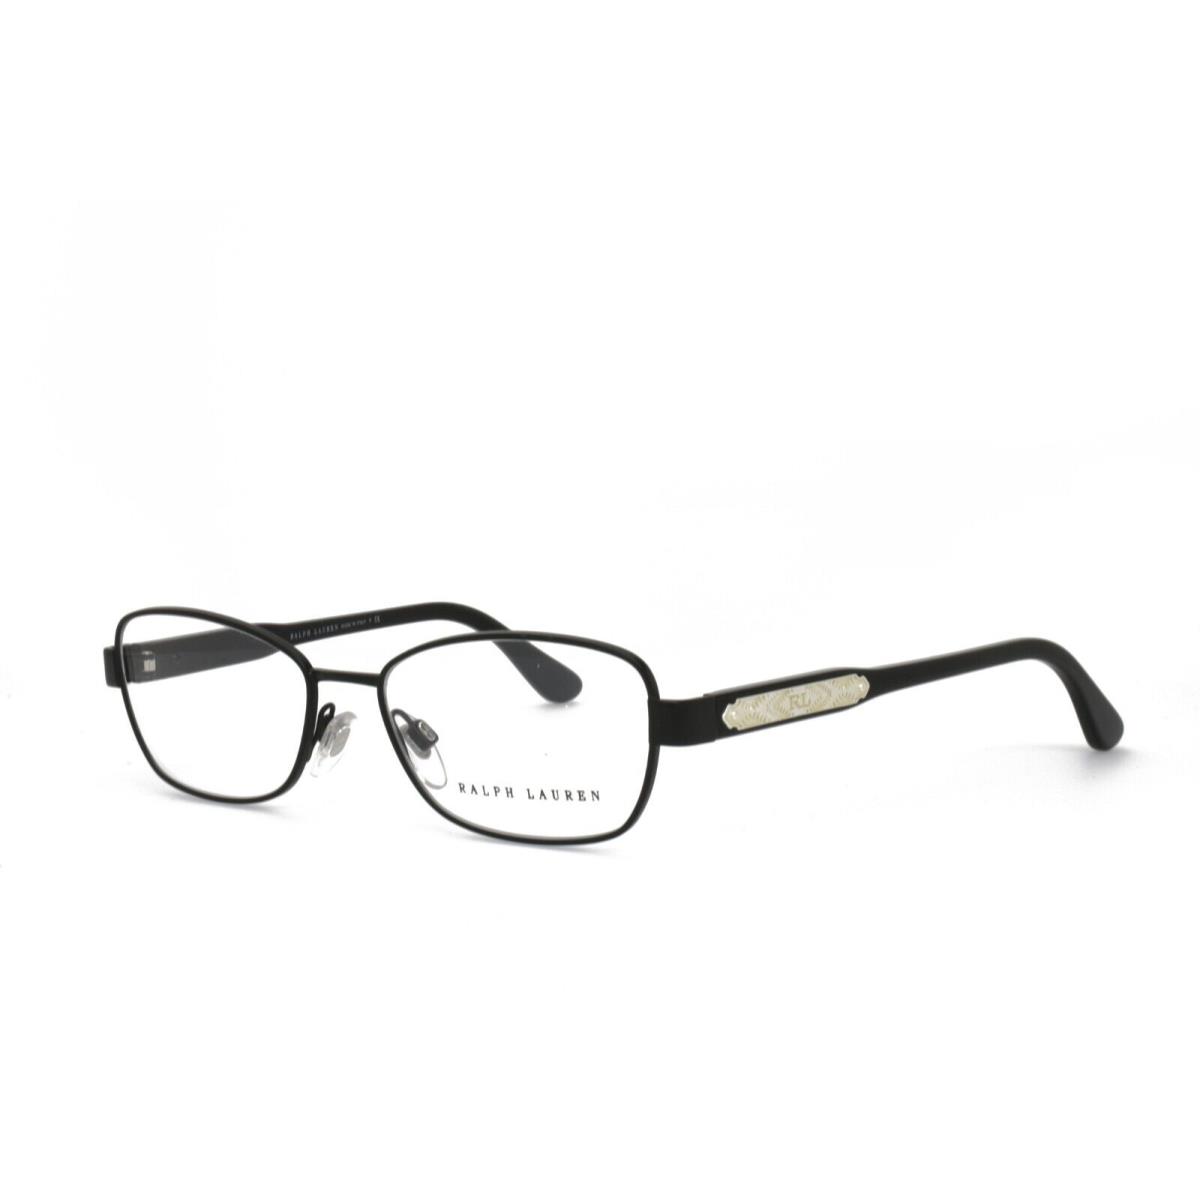 Ralph Lauren 5088 9038 49-15-140 Black Eyeglasses Frames